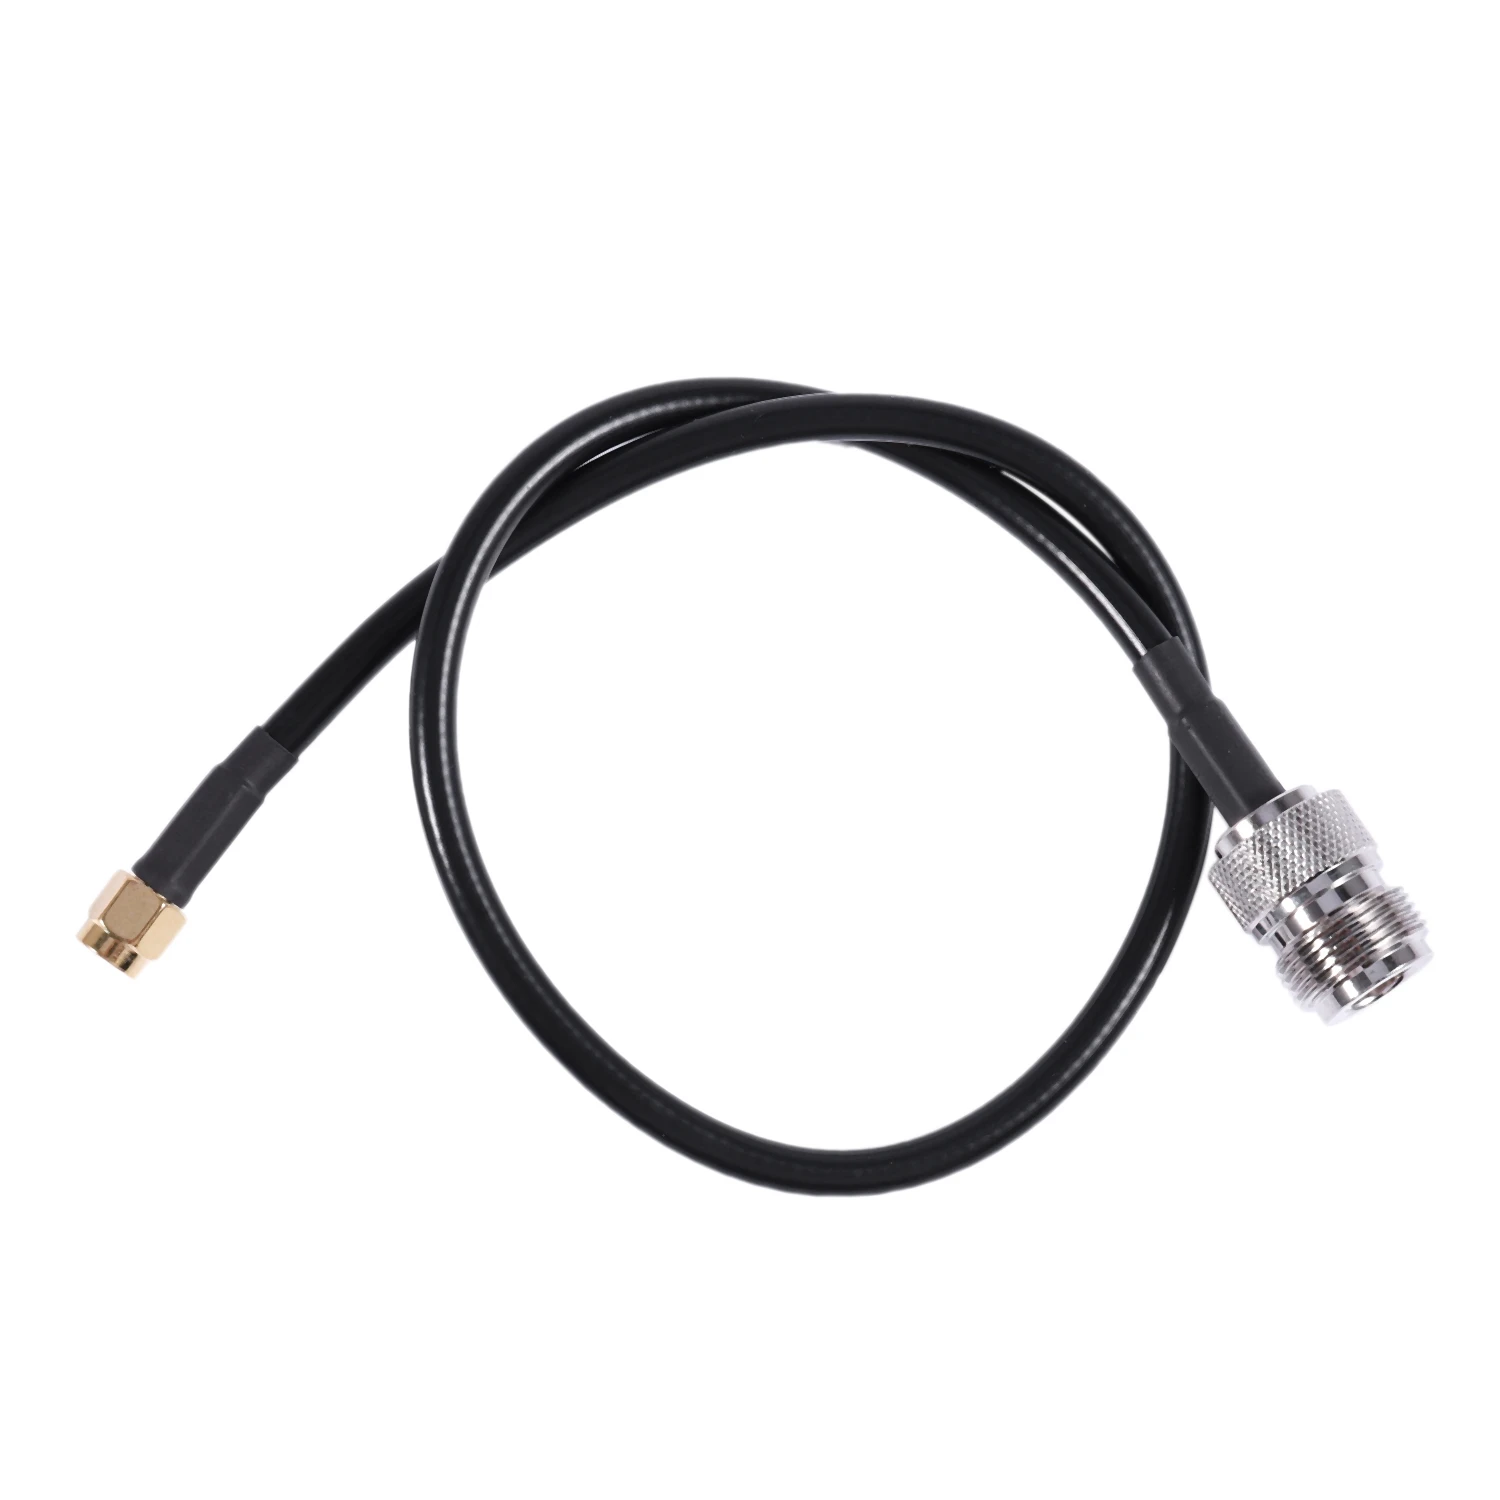 

Женский штыревой Соединительный кабель типа N, черный, 40 см